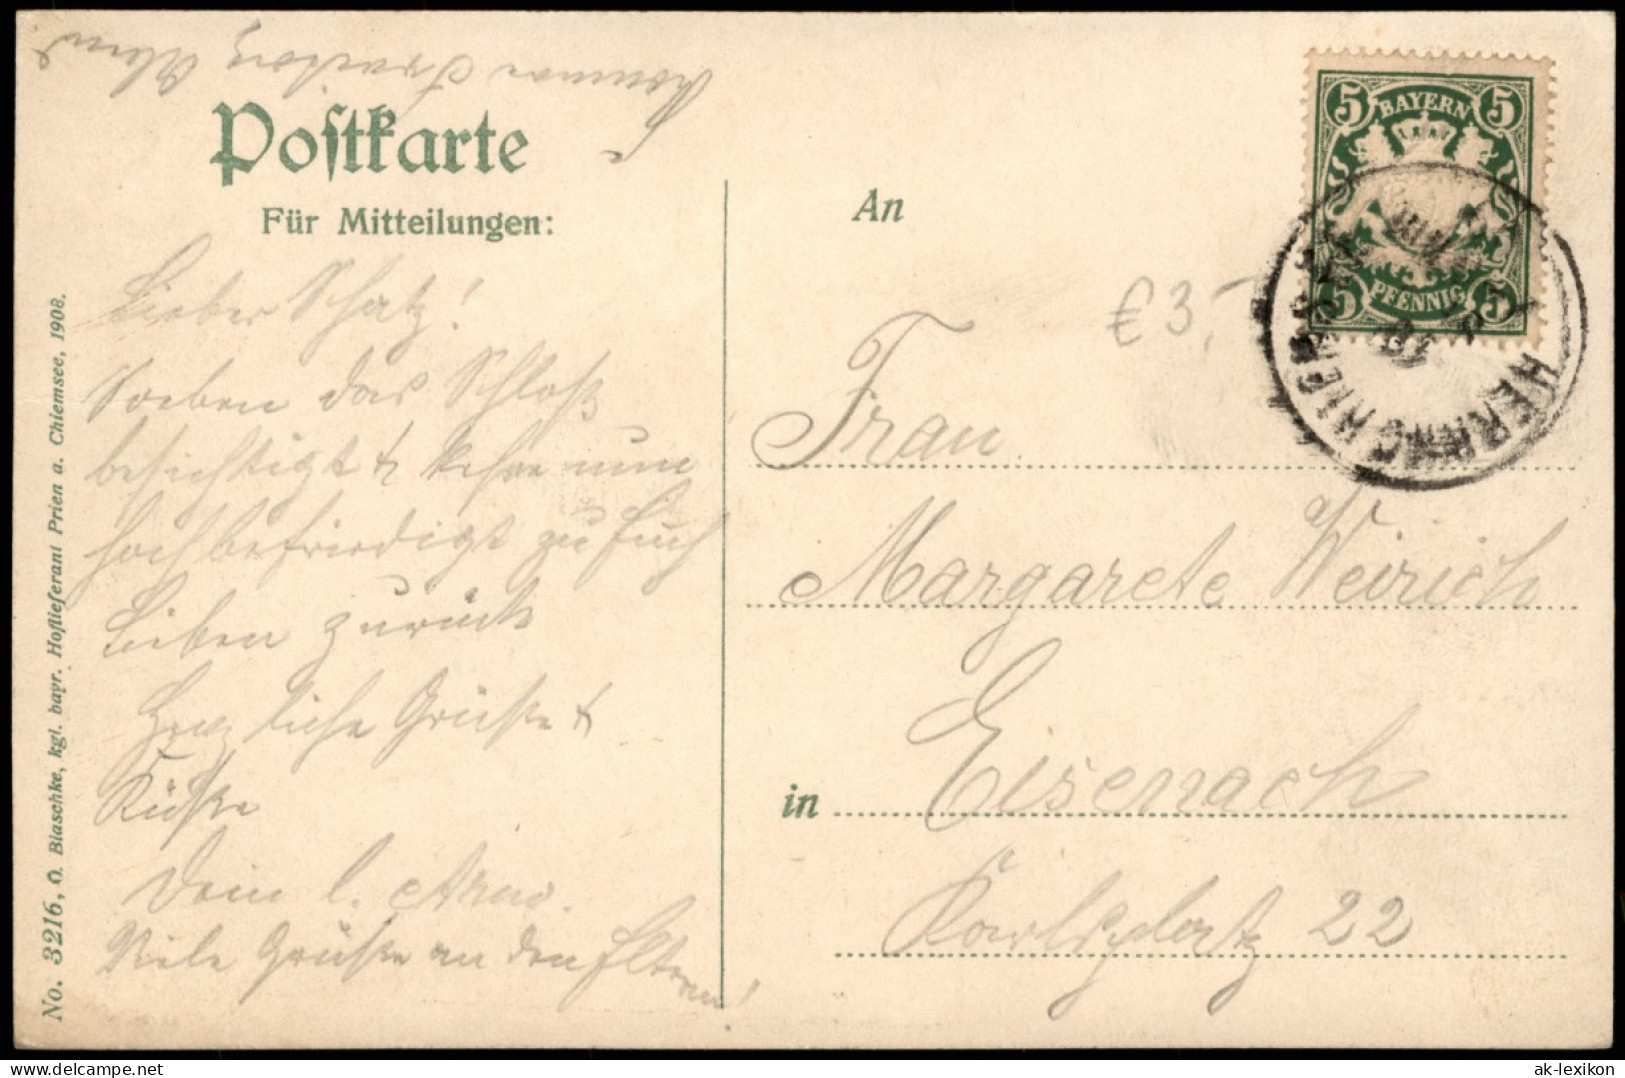 Ansichtskarte Chiemsee Kgl. Schloss Herrenchiemsee, Castle In Bavaria 1908 - Chiemgauer Alpen